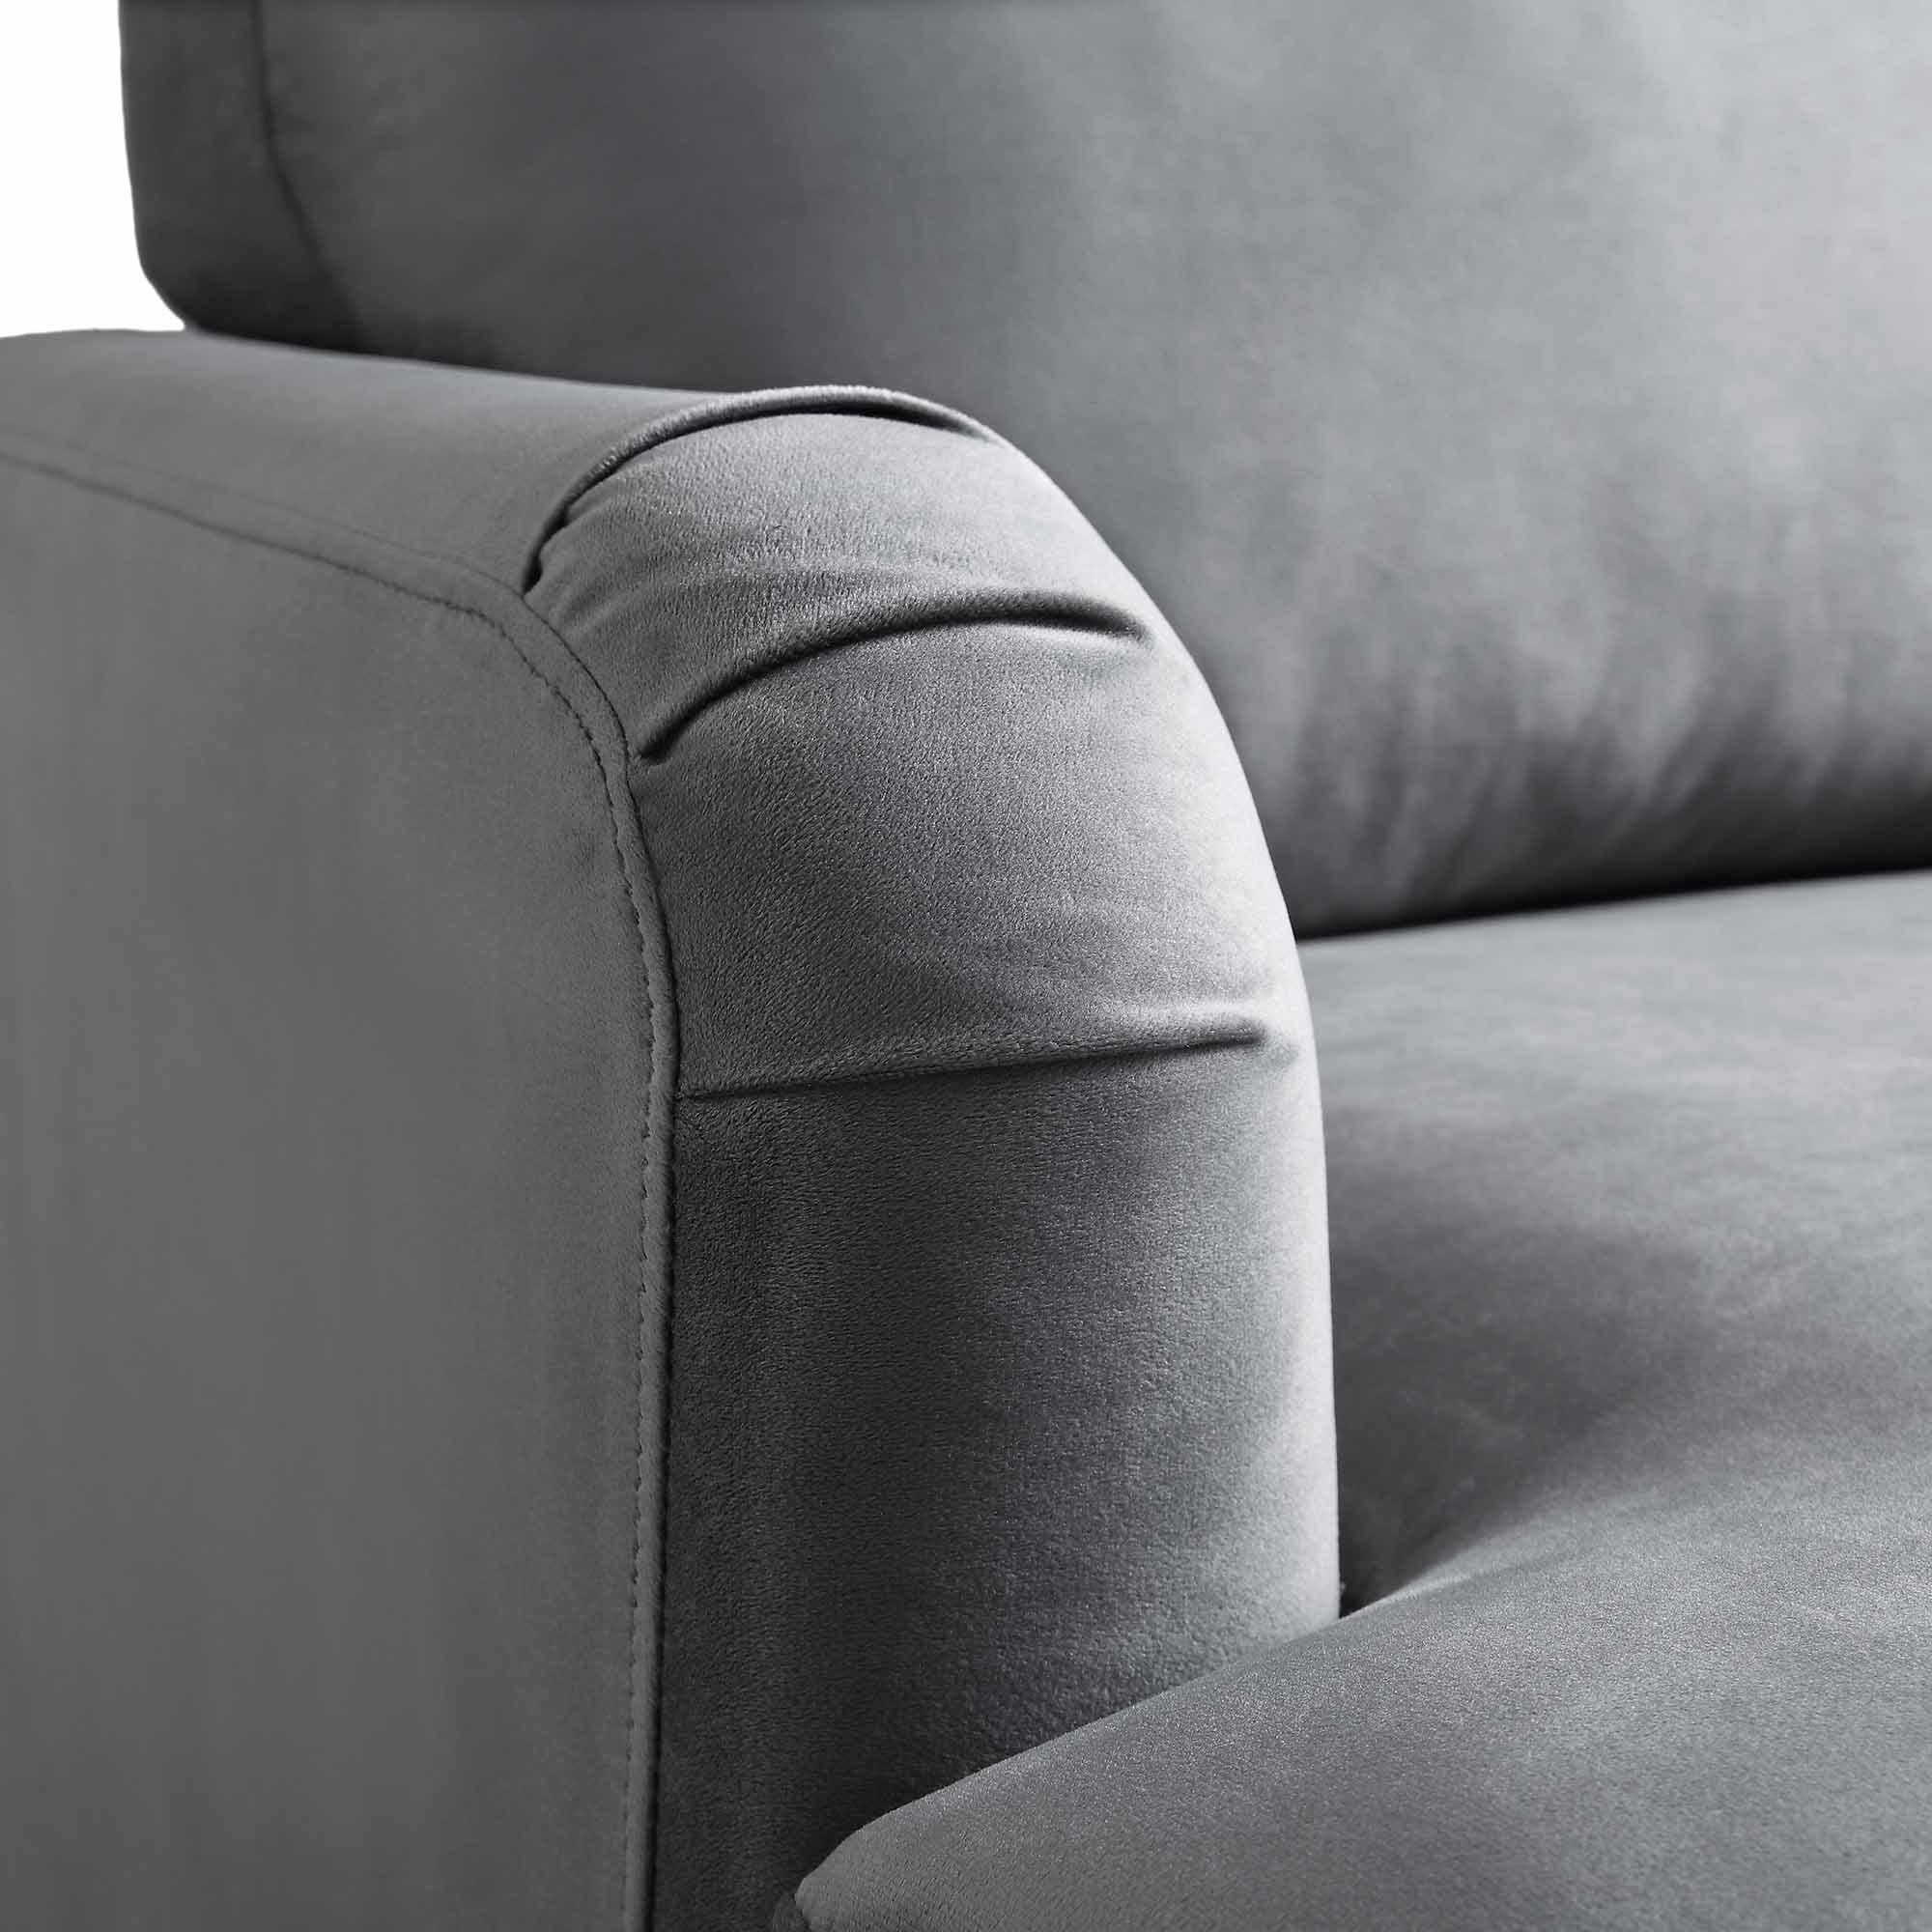 Brigette Grey Velvet Armchair with Antique Brass Castor Legs